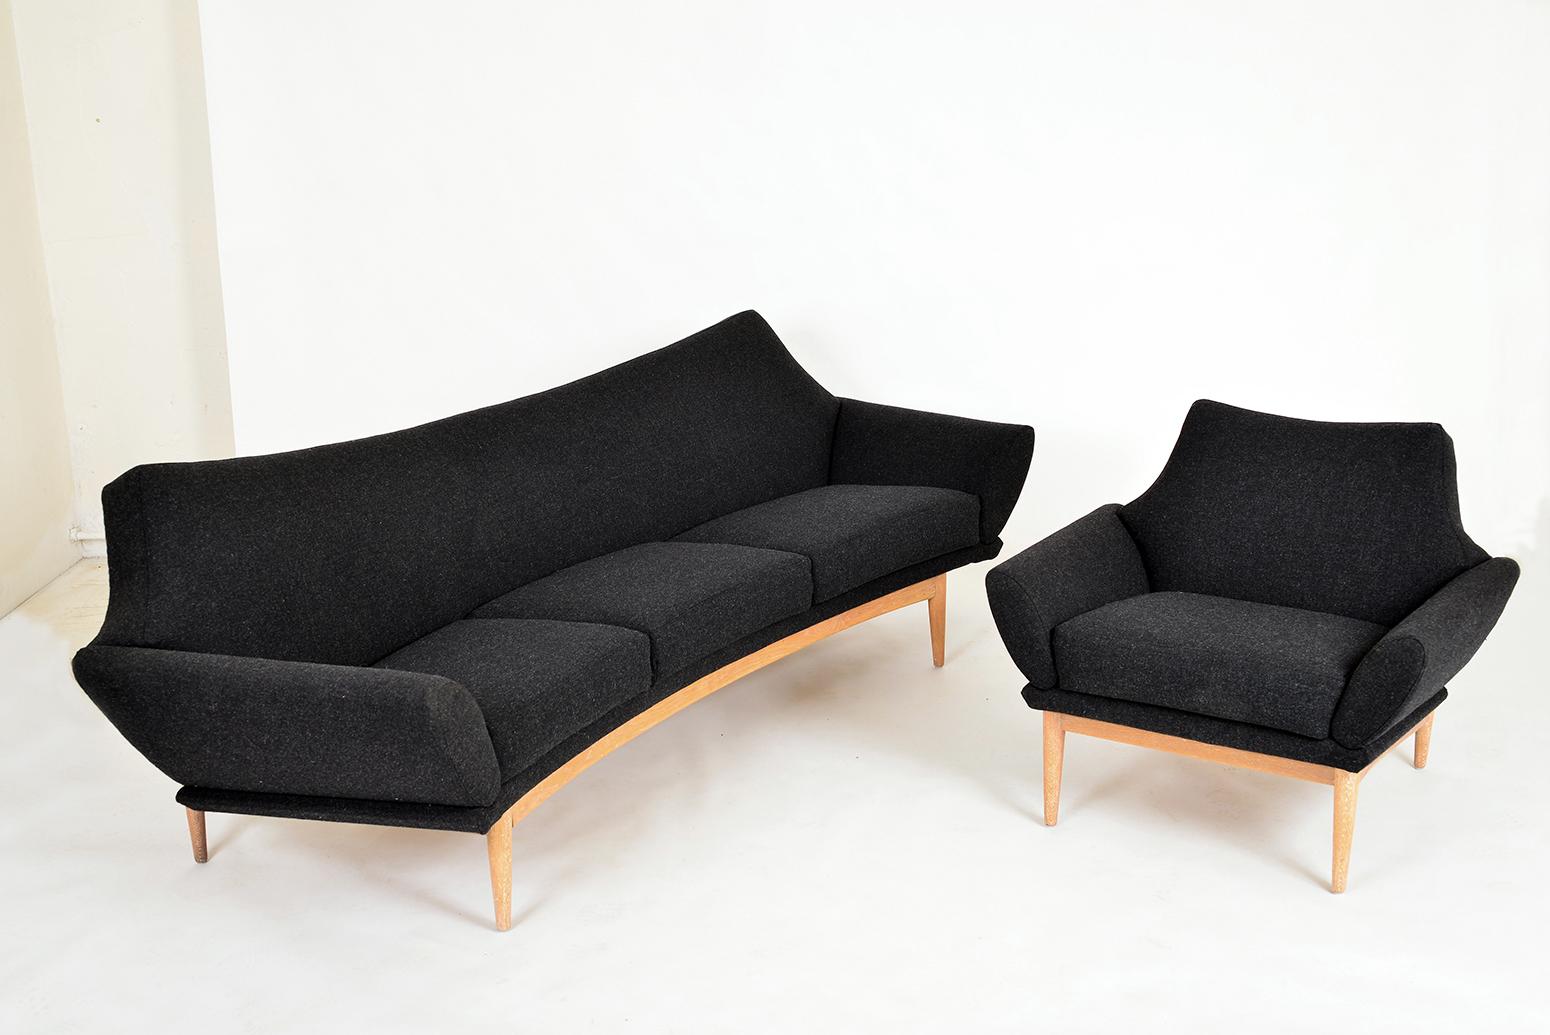 Rare canapé trois places incurvé et fauteuil assorti, conçus en 1960 par le designer danois Johannes Andersen pour la société suédoise peu connue Trensums.
Ce modèle, appelé 